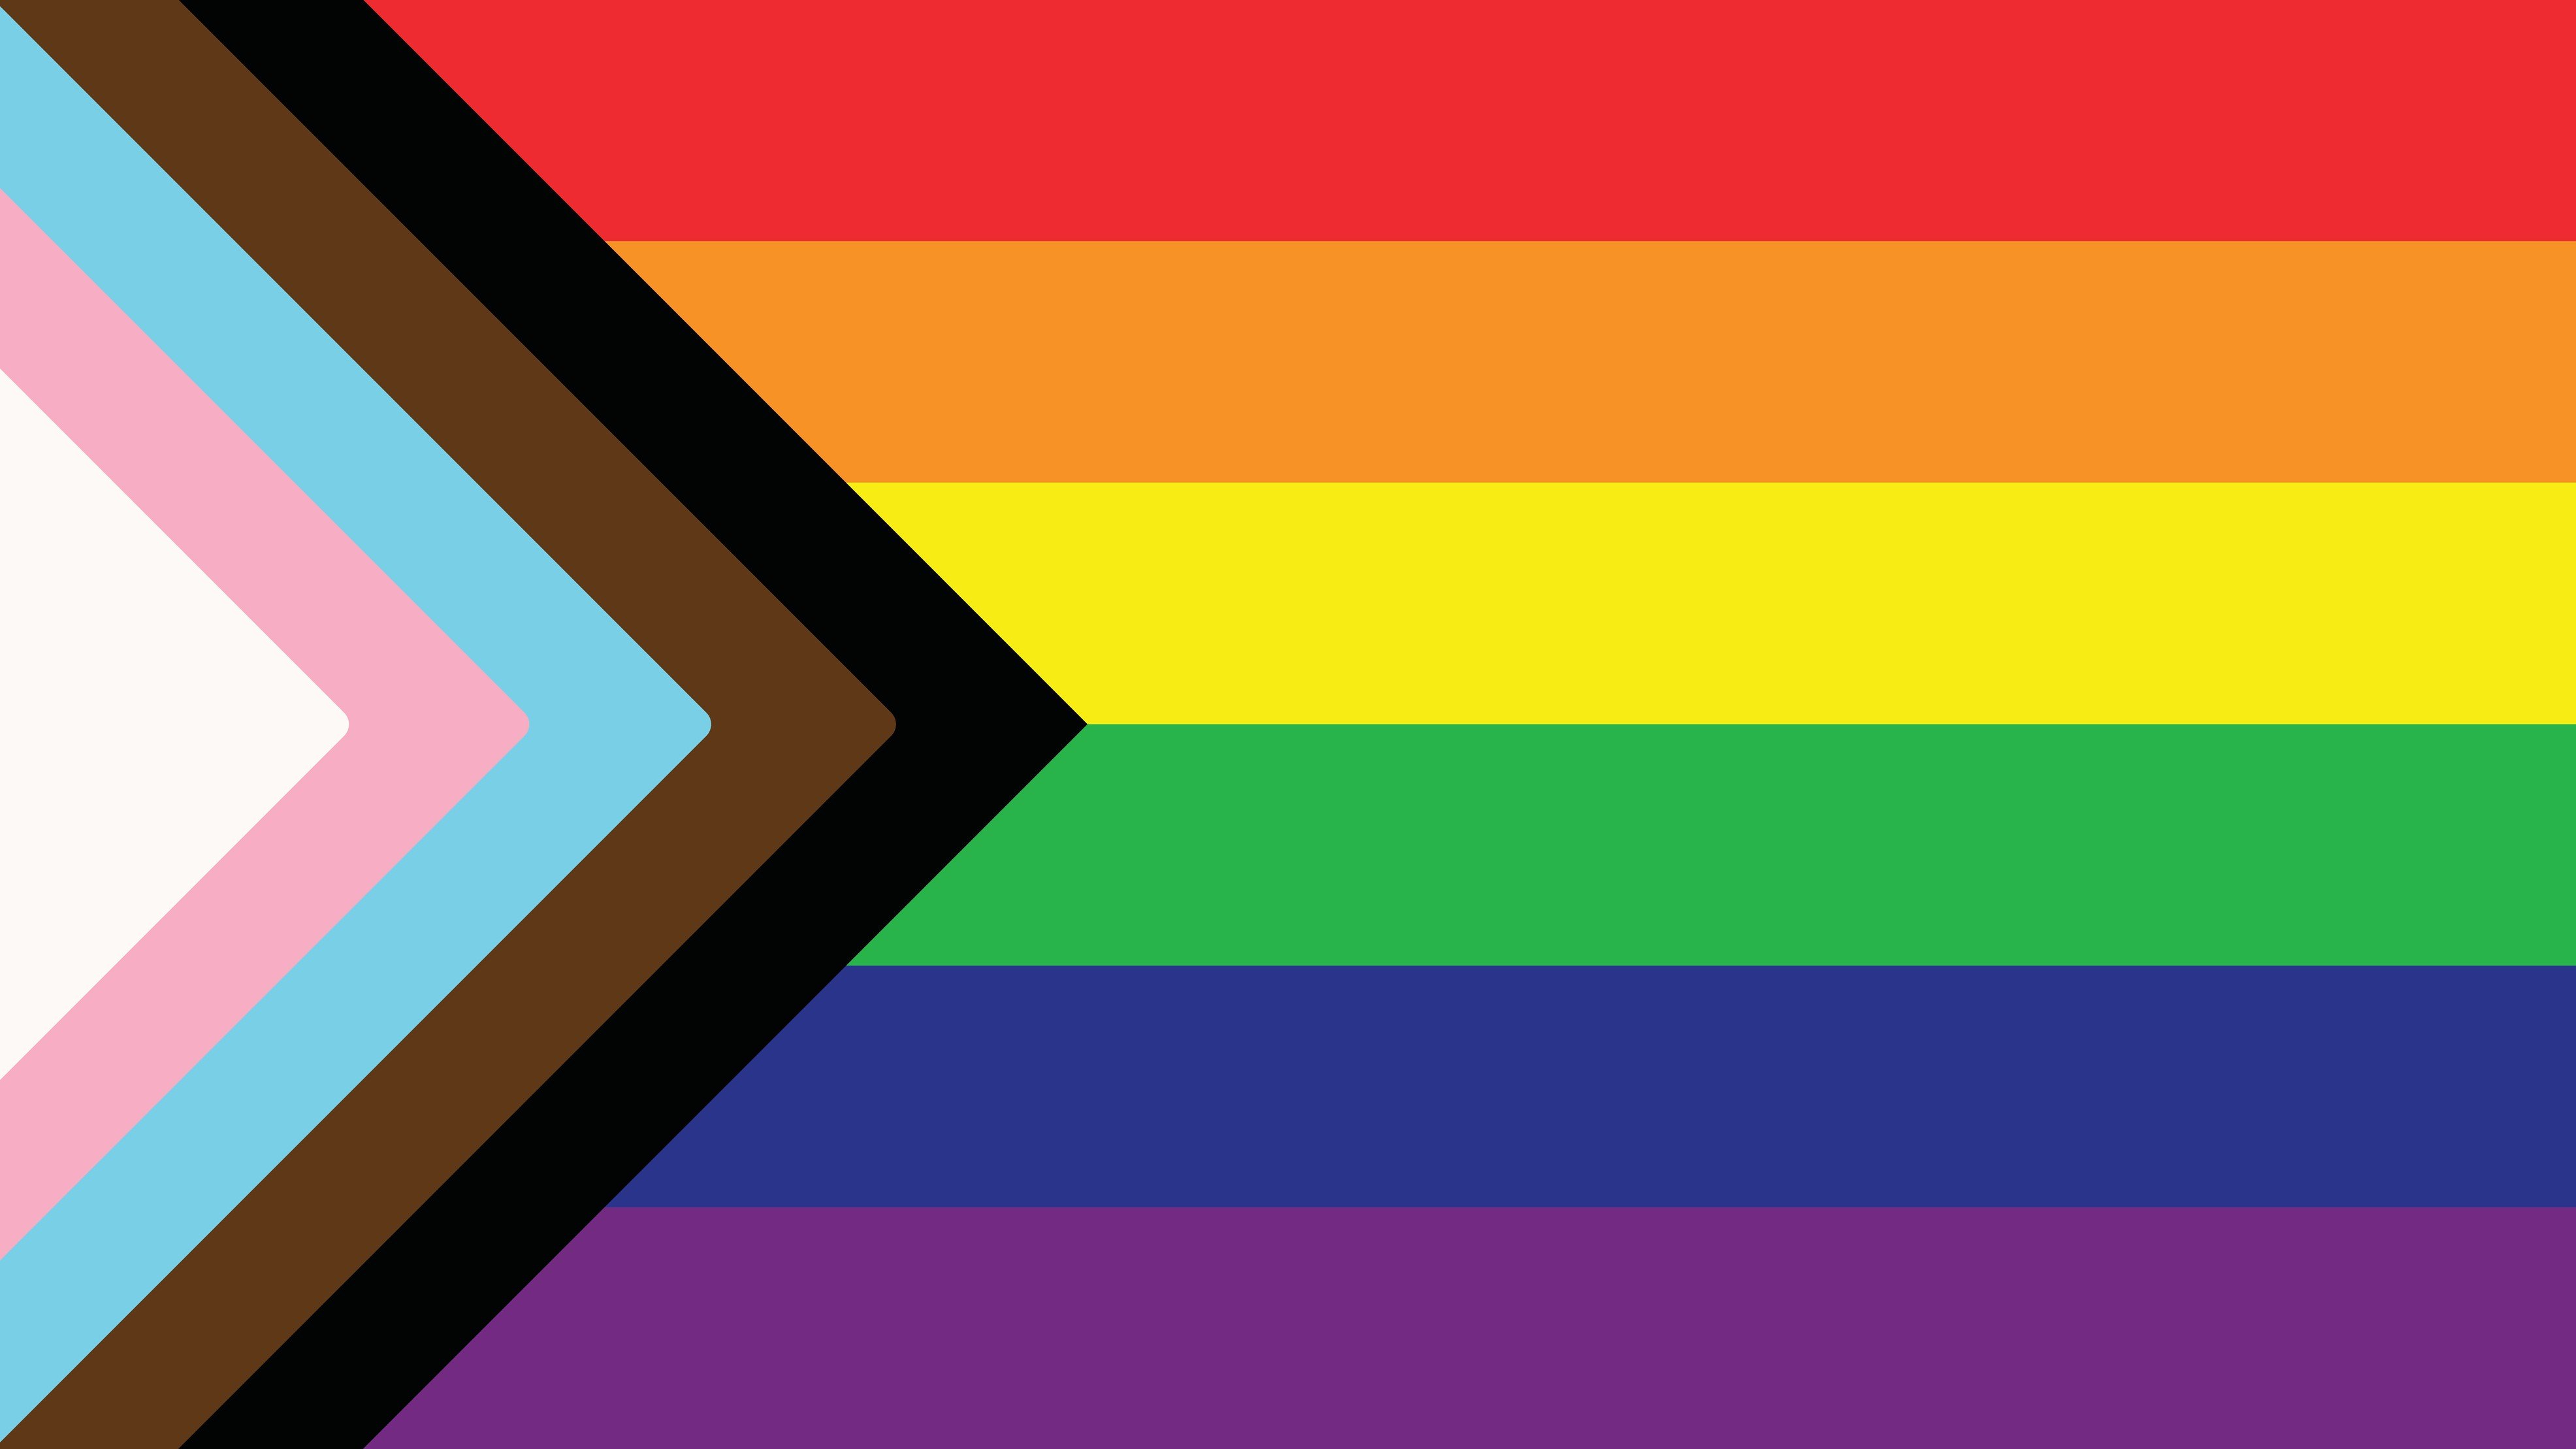 Bandeira LGBT+ com as cores marrom e preta simbolizando pessoas não-brancas.